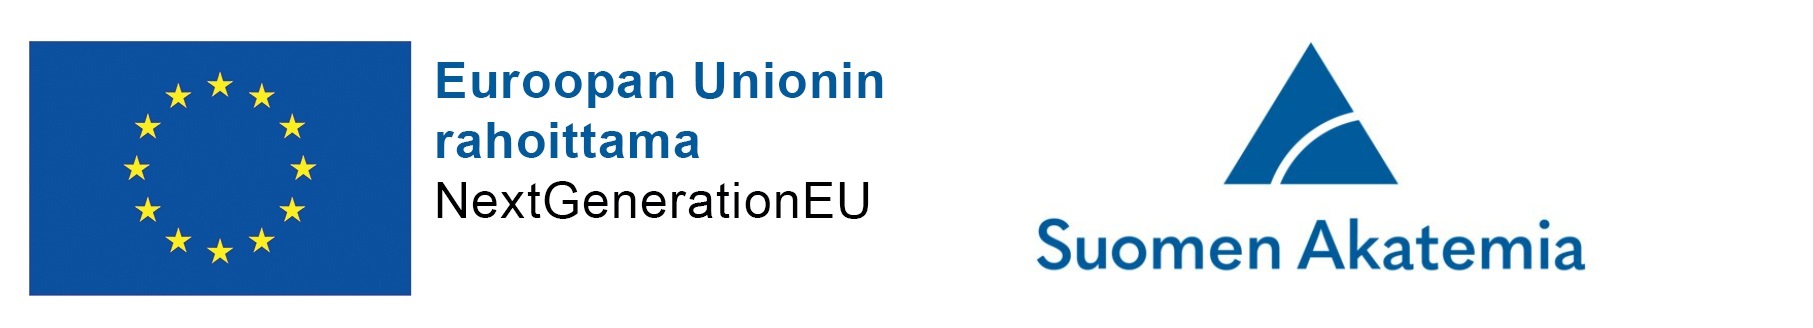 Euroopan Unionin logo ja teksti: Euroopan Unioinin rahoittama, NextGenerationEU sekä Suomen Akatemia logo ja teksti.